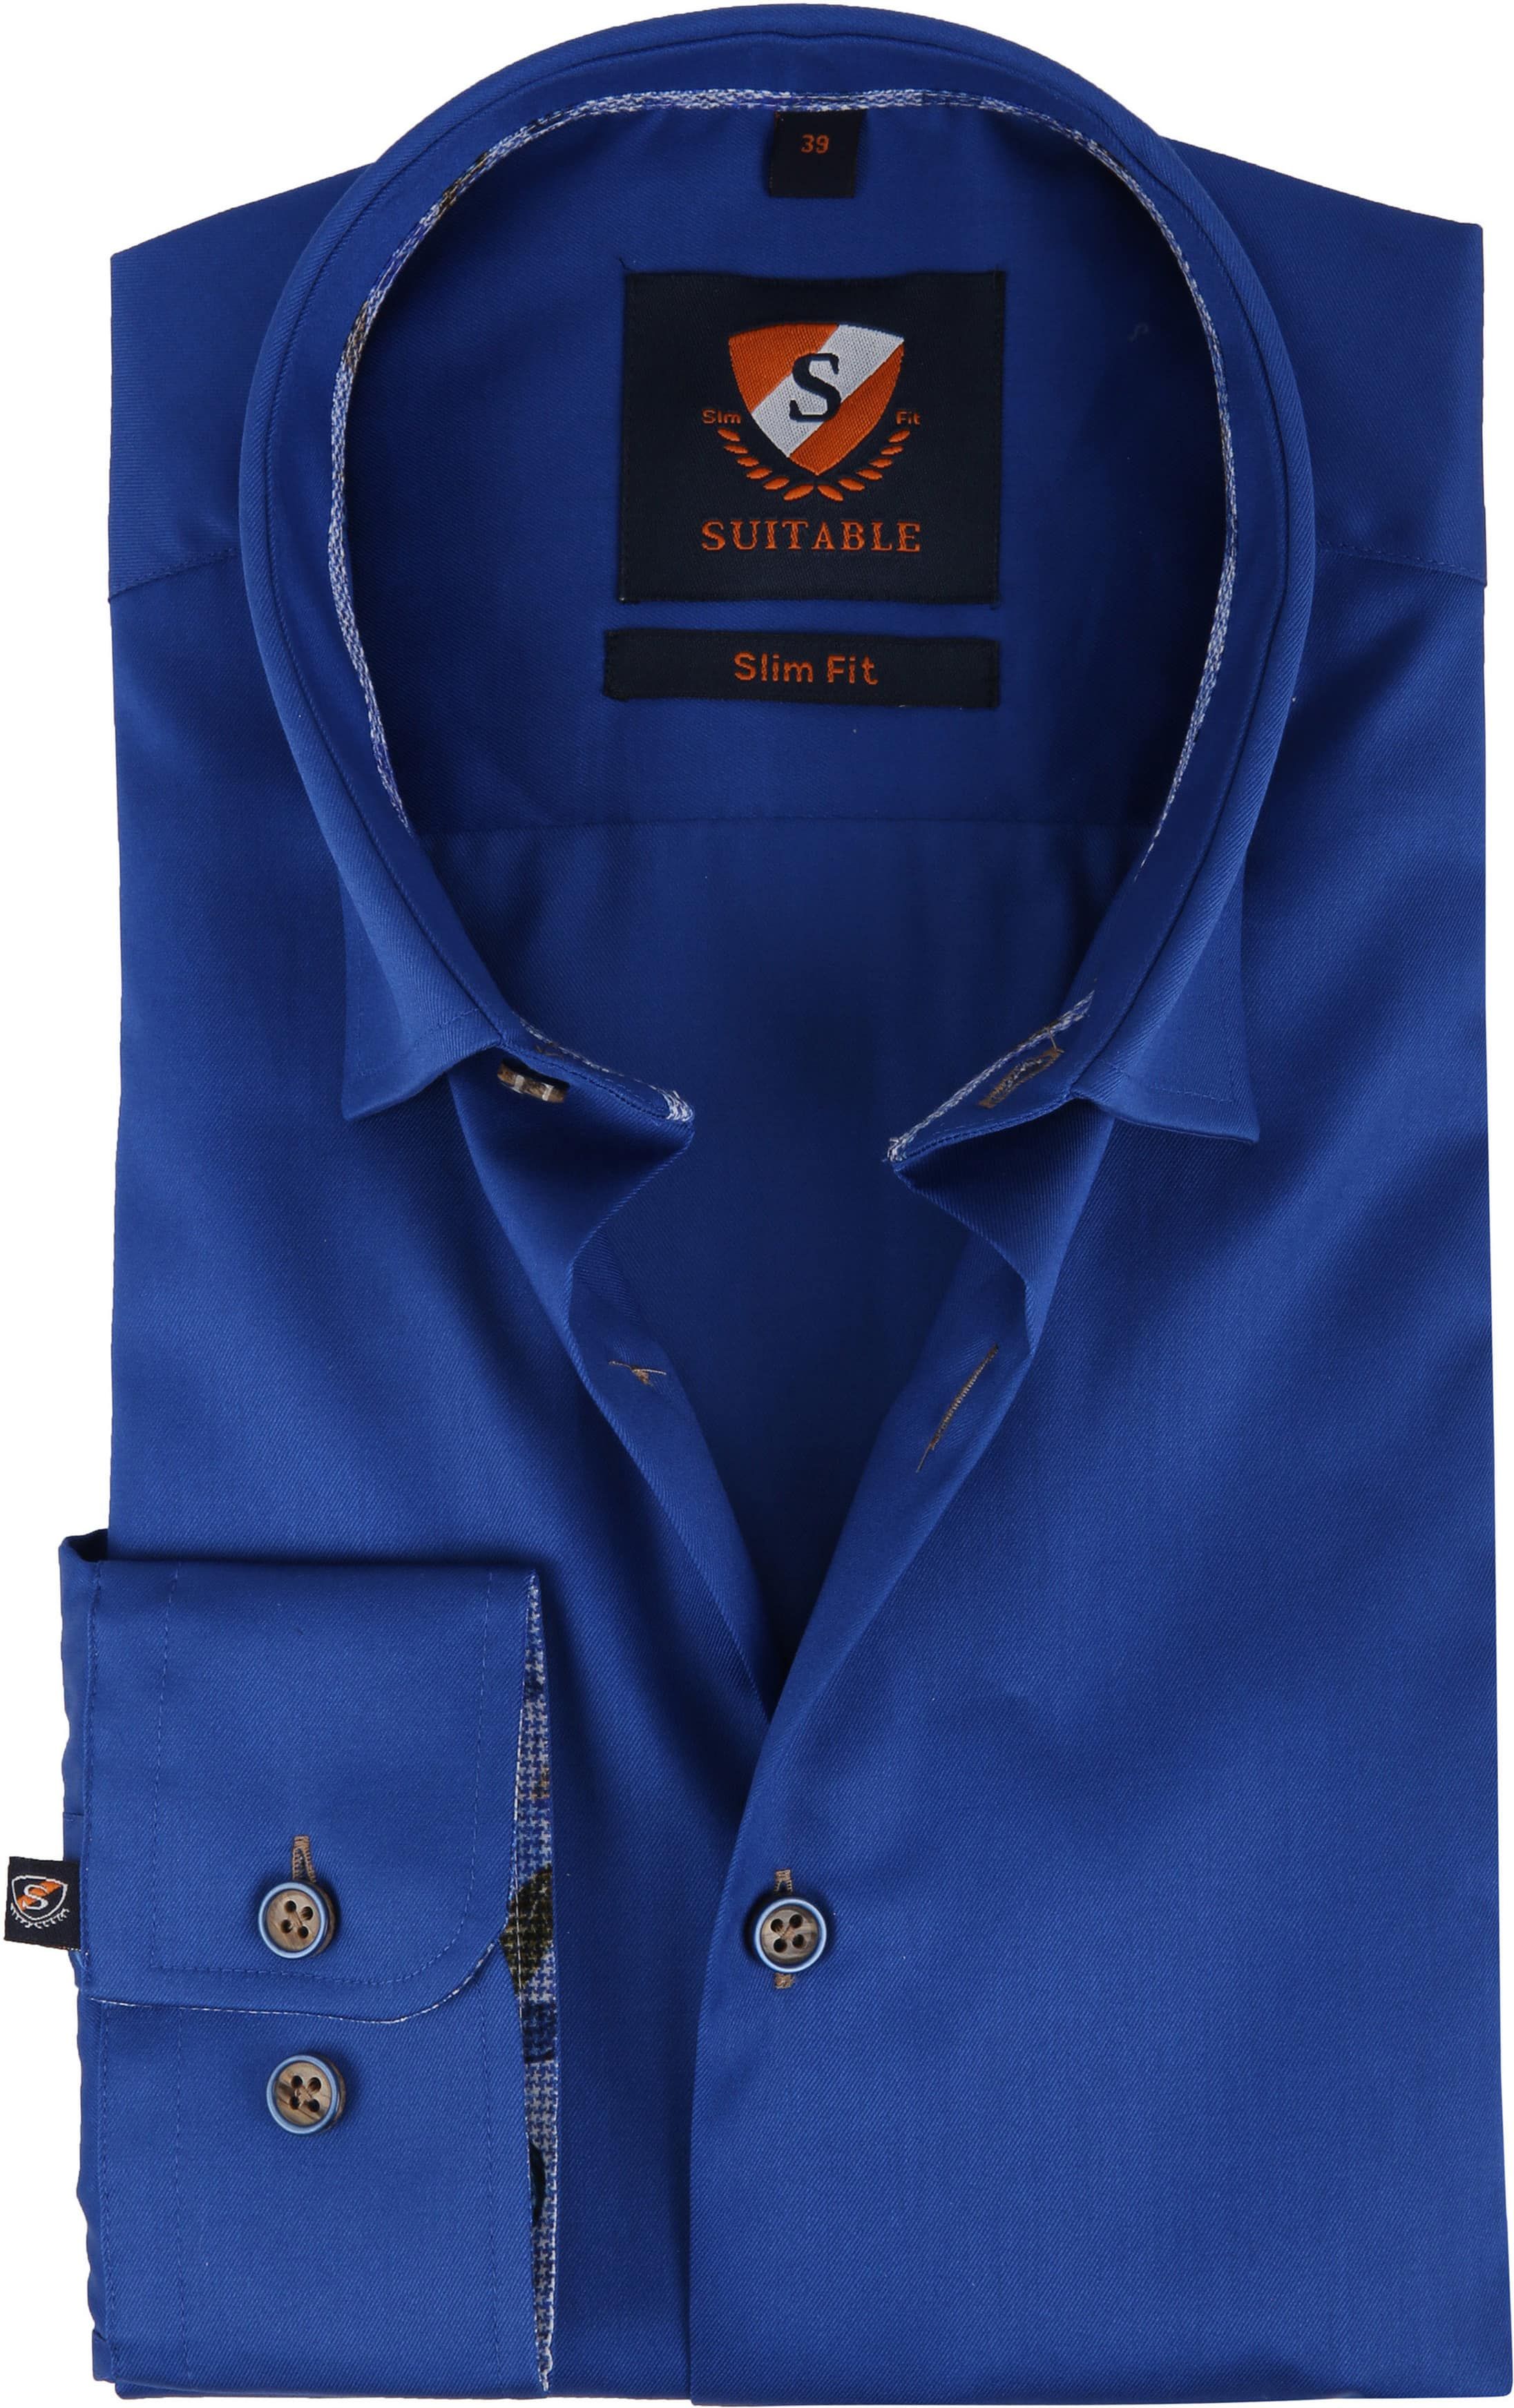 Suitable Shirt HBD Smart Cobalt Blue size 15 1/2